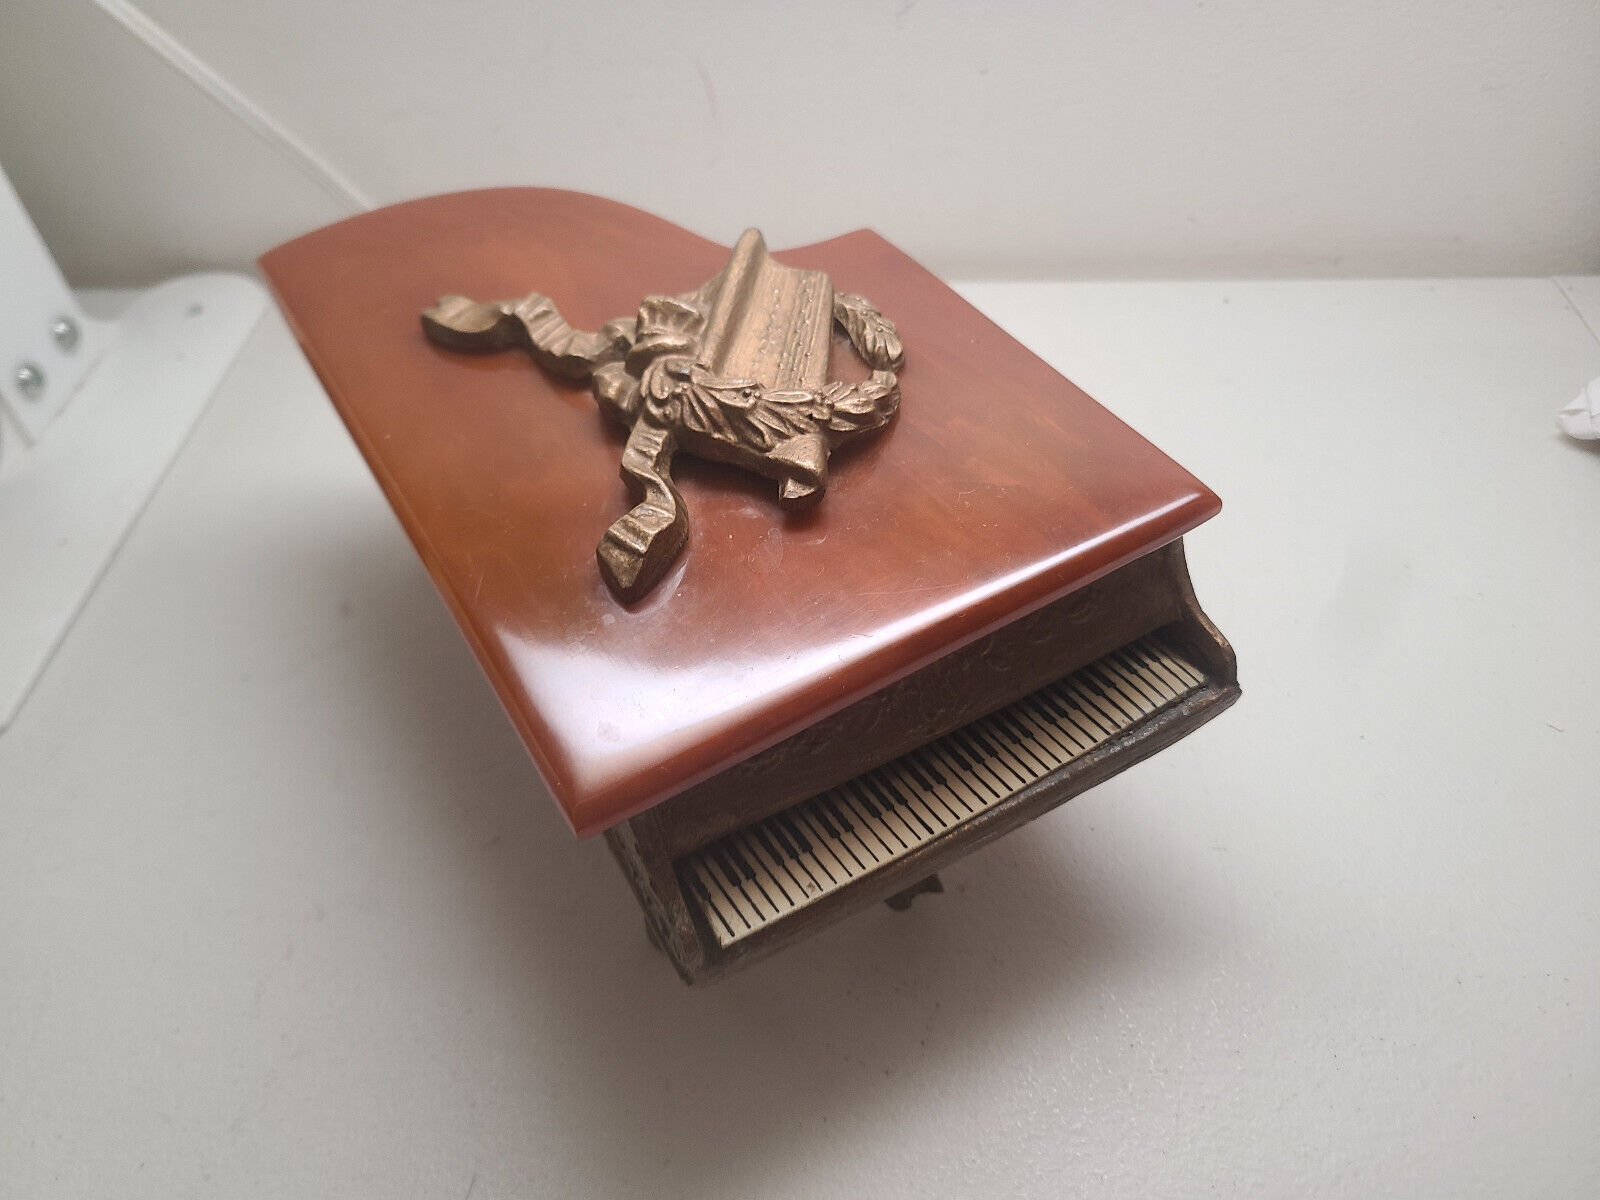 Vintage Thorens Grand Piano Music Box Bakelite Top - Switzerland - Works